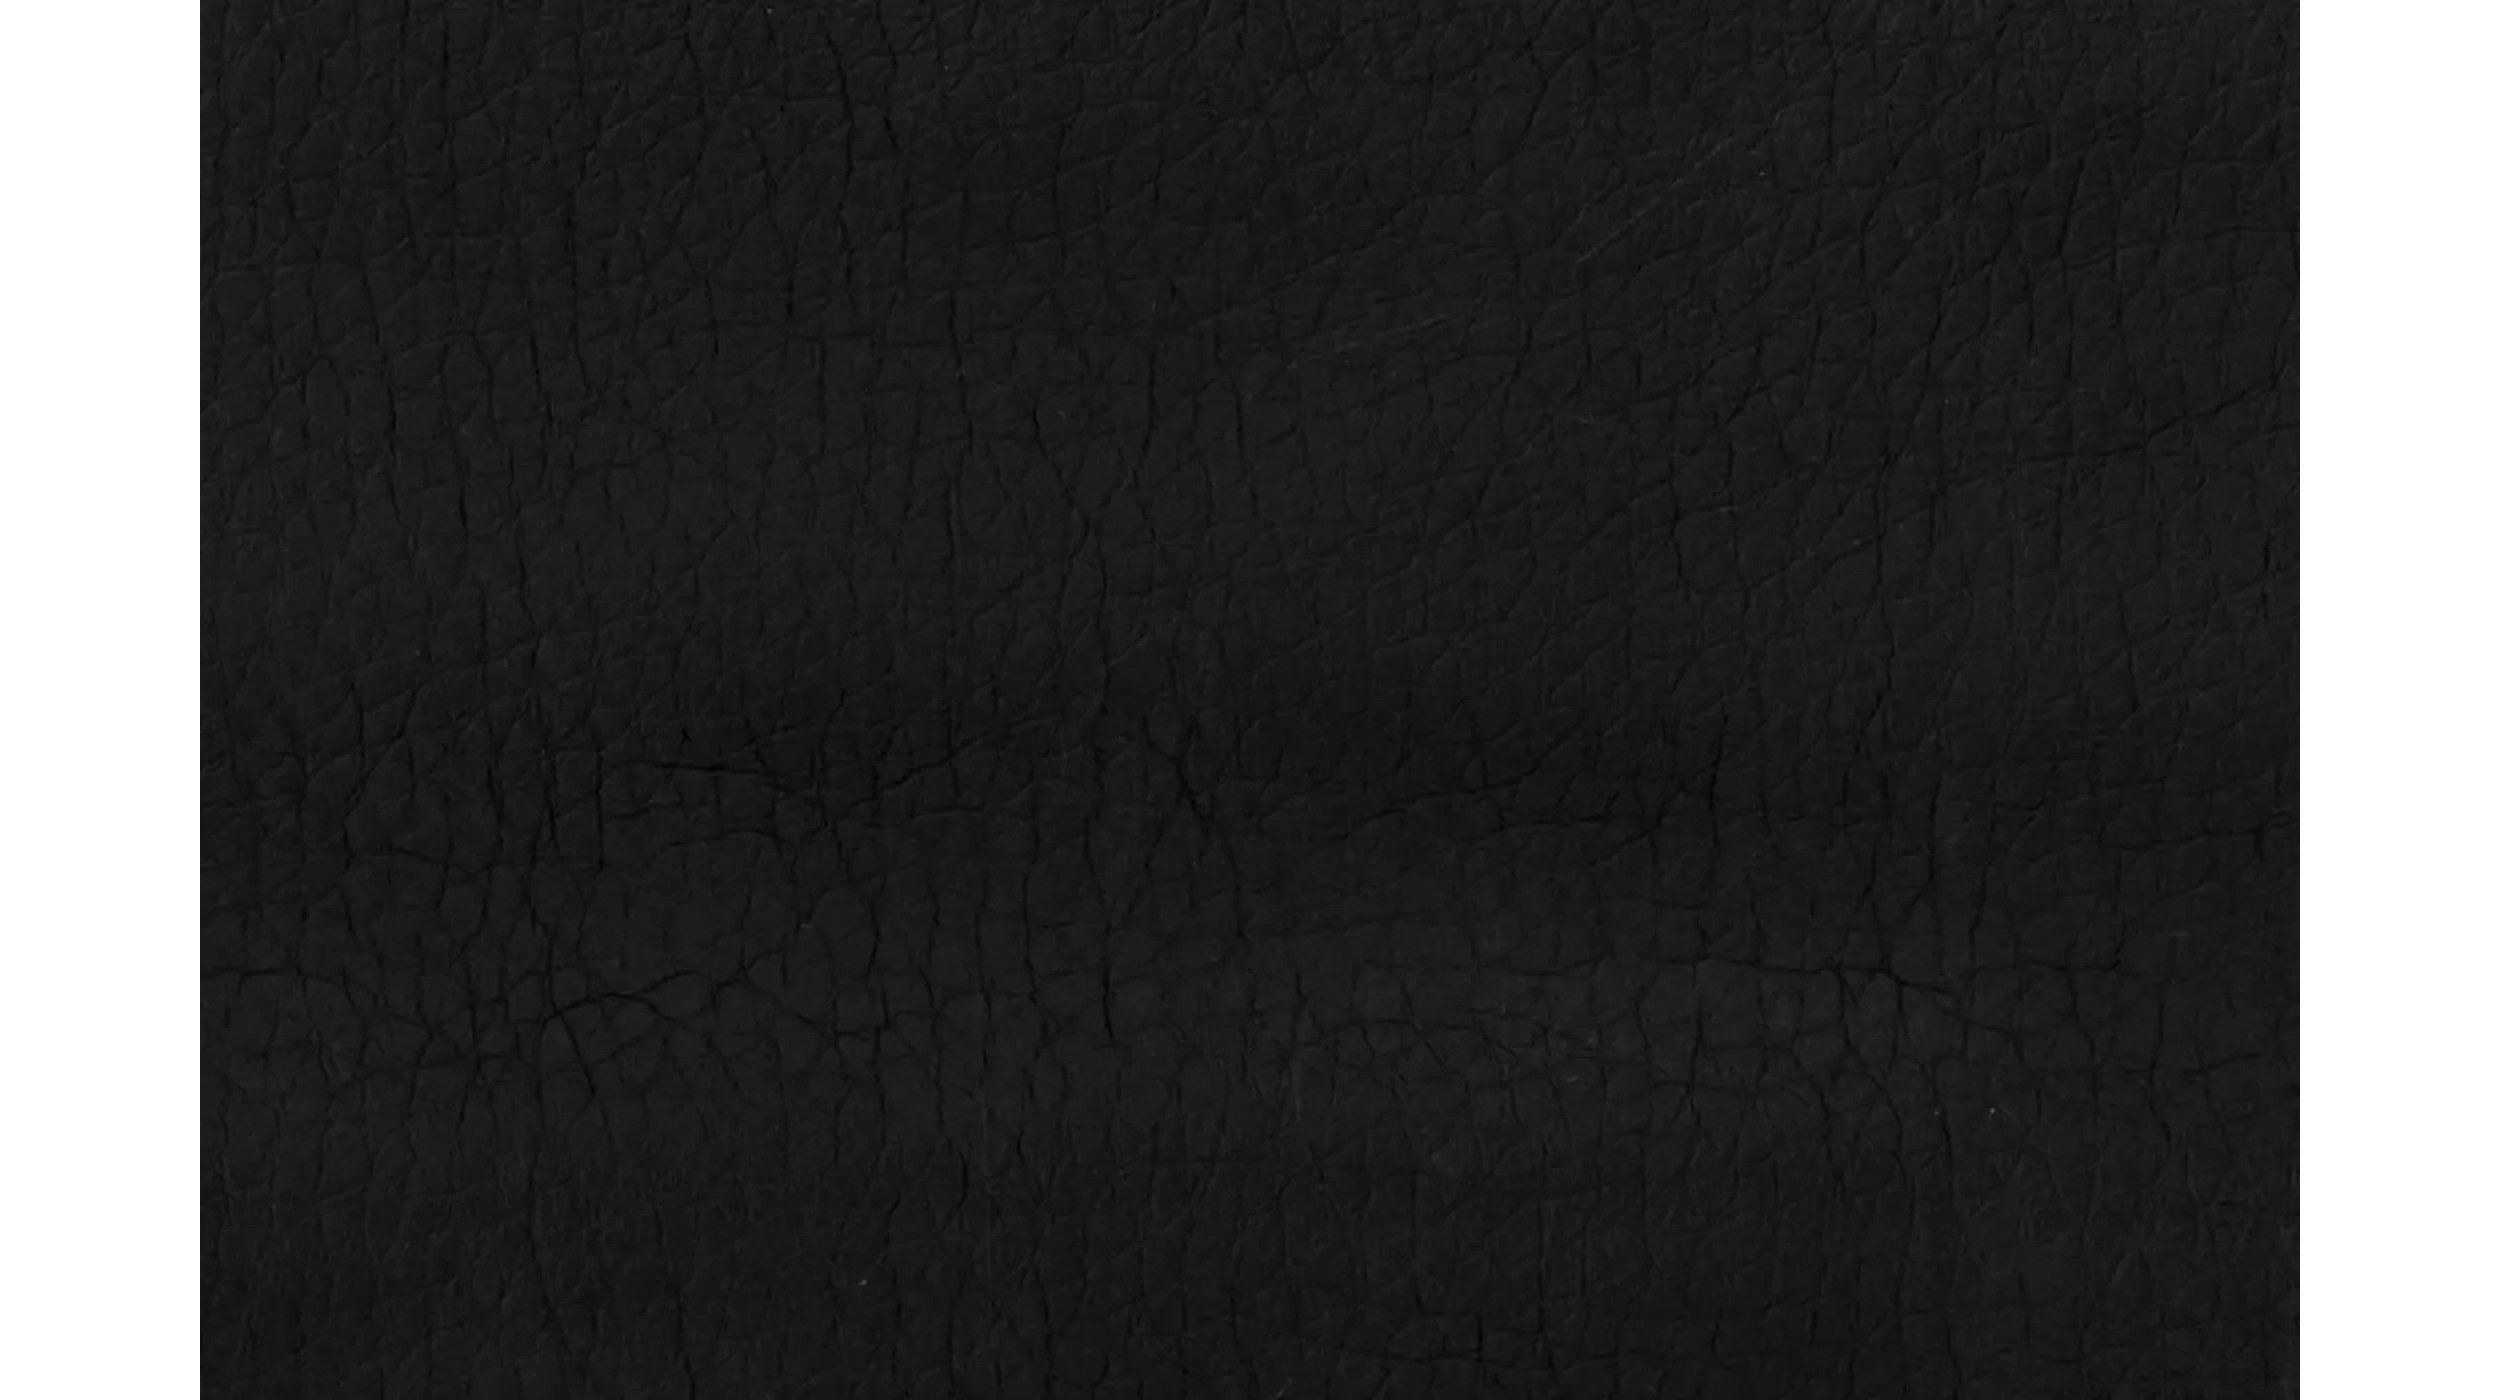 Ecksofa schwarz 267 x 178 cm Beleuchtung - FREAK